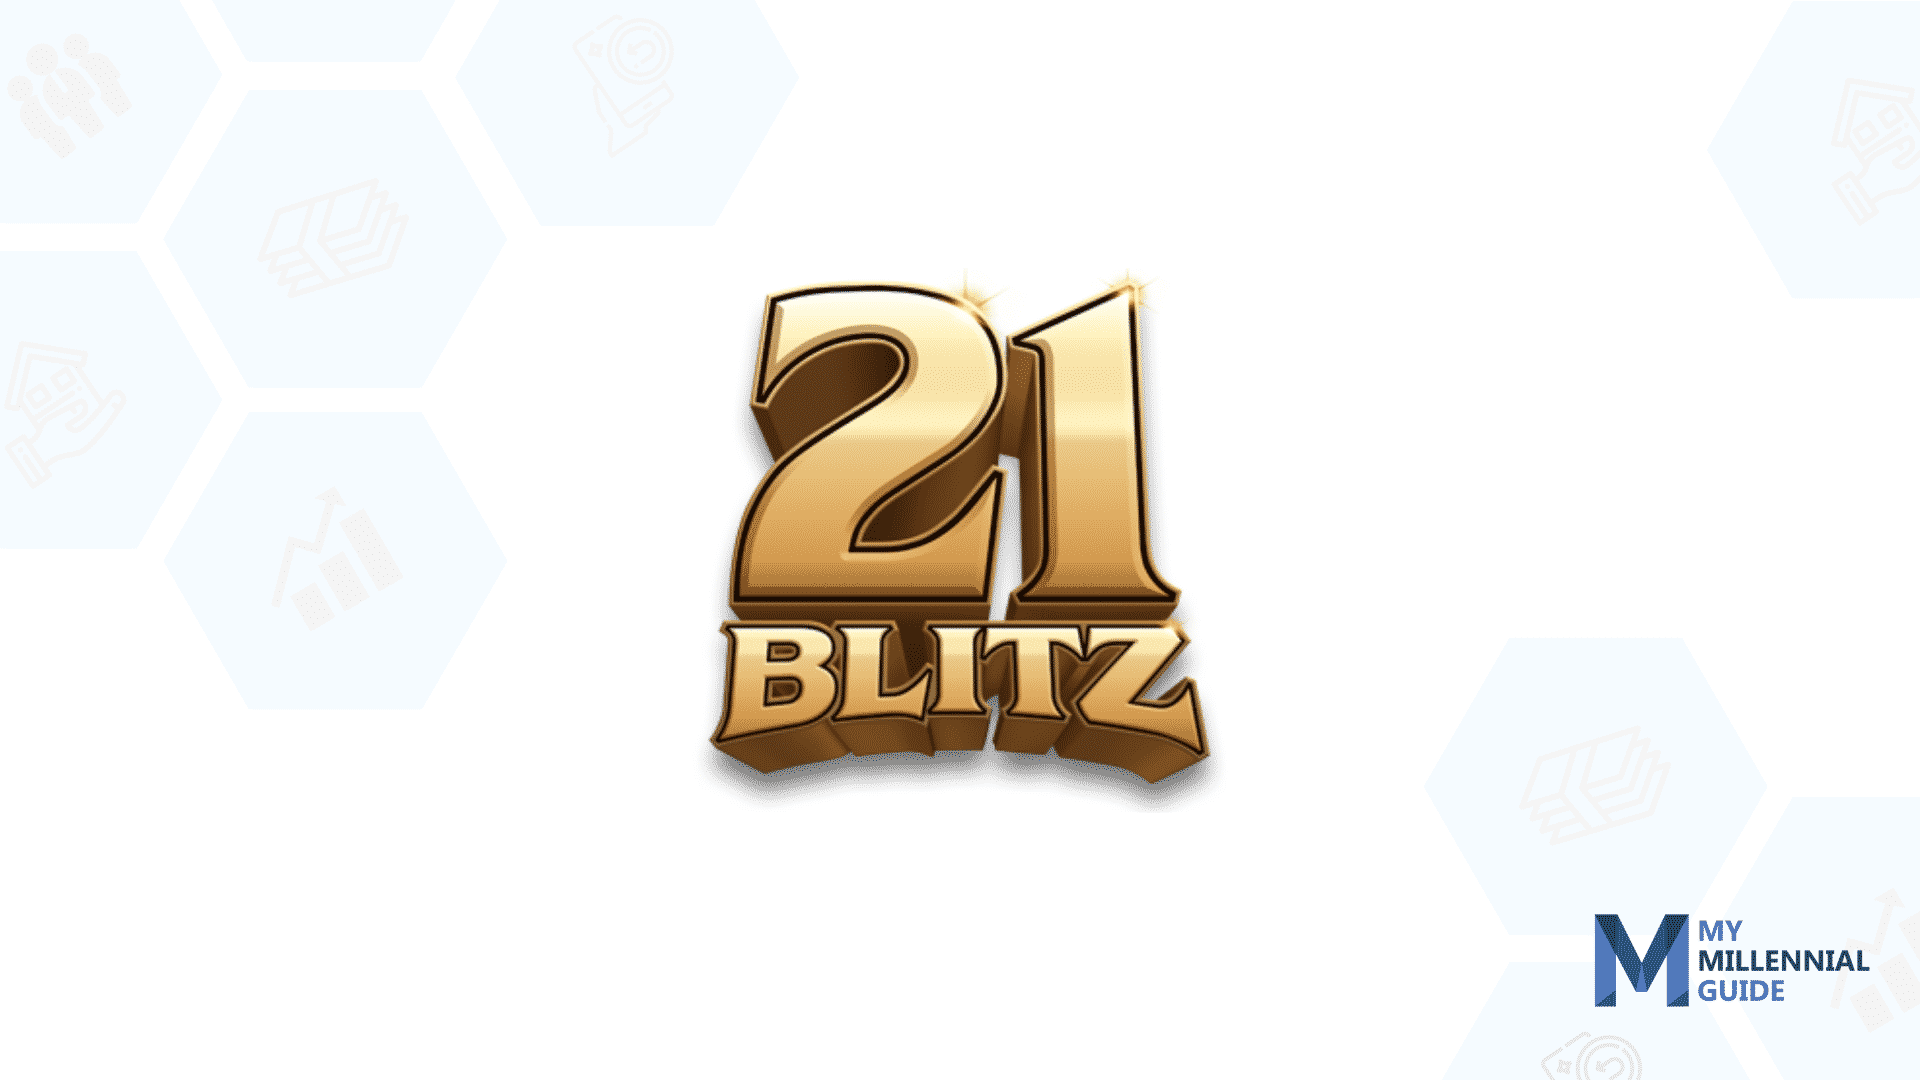 21 Blitz Review: Is 21 Blitz Legit?